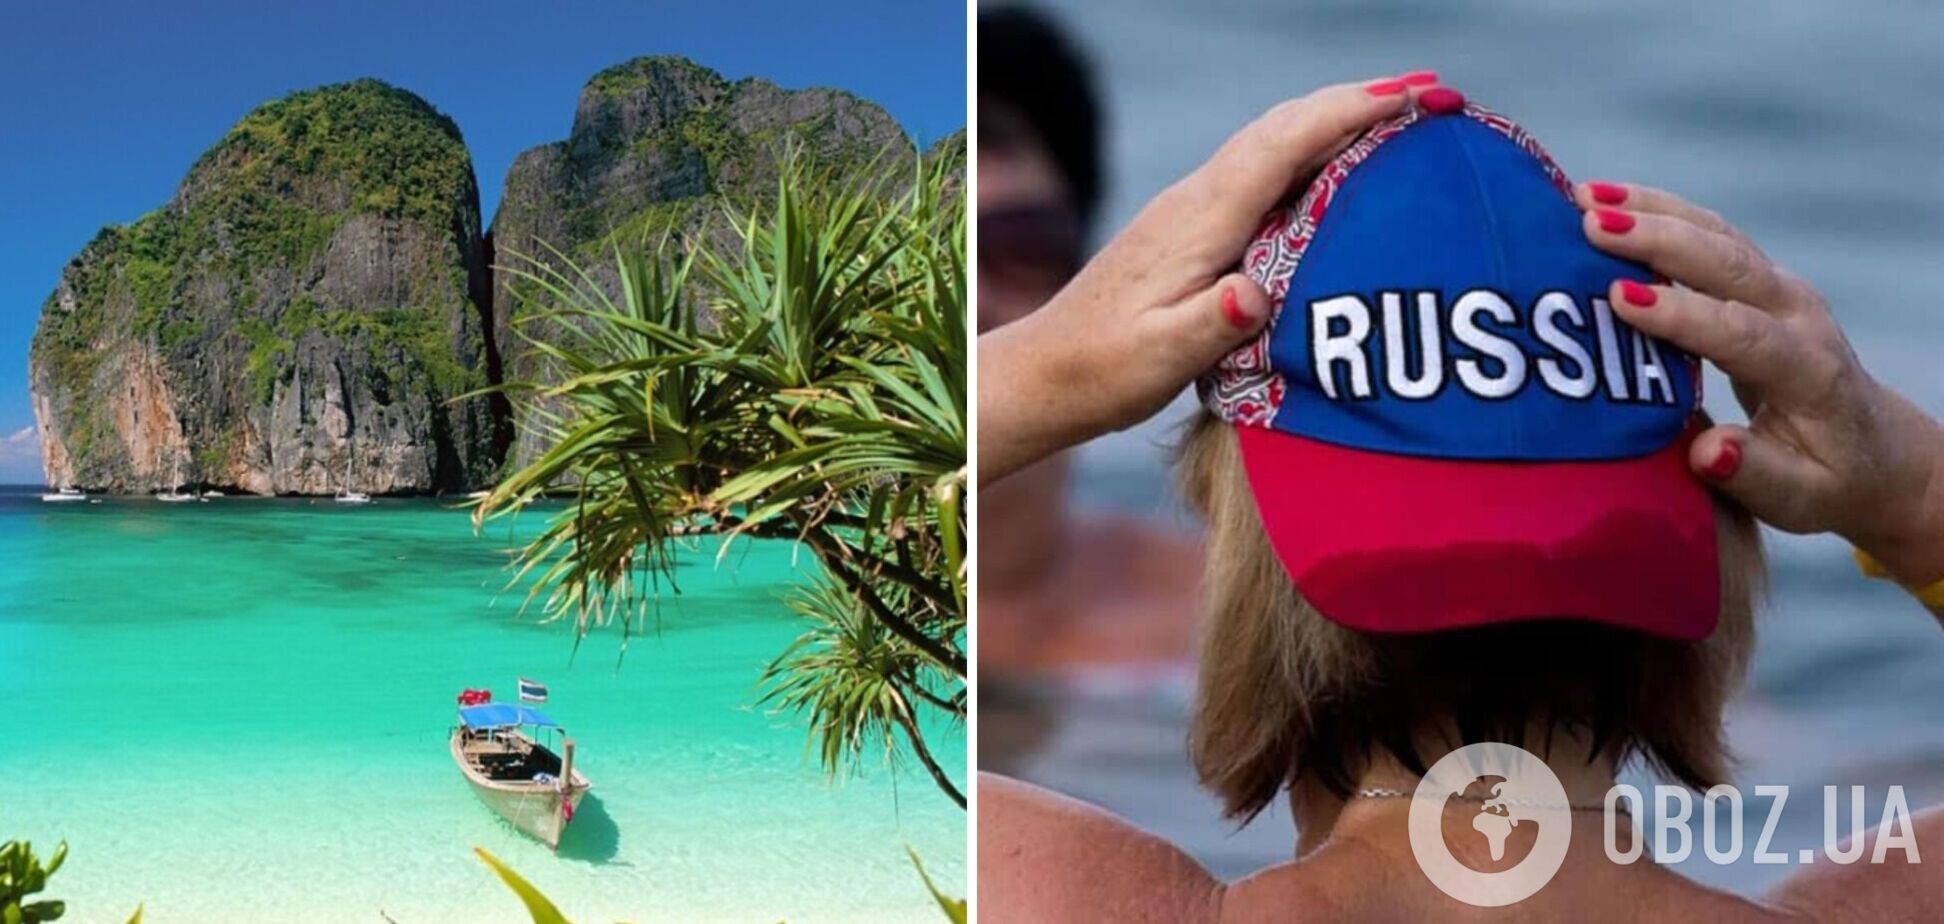 У Таїланді затримали п'яних російських туристів за таємне послання, а з Балі депортували росіянку, яка понад рік жила там 'на халяву'